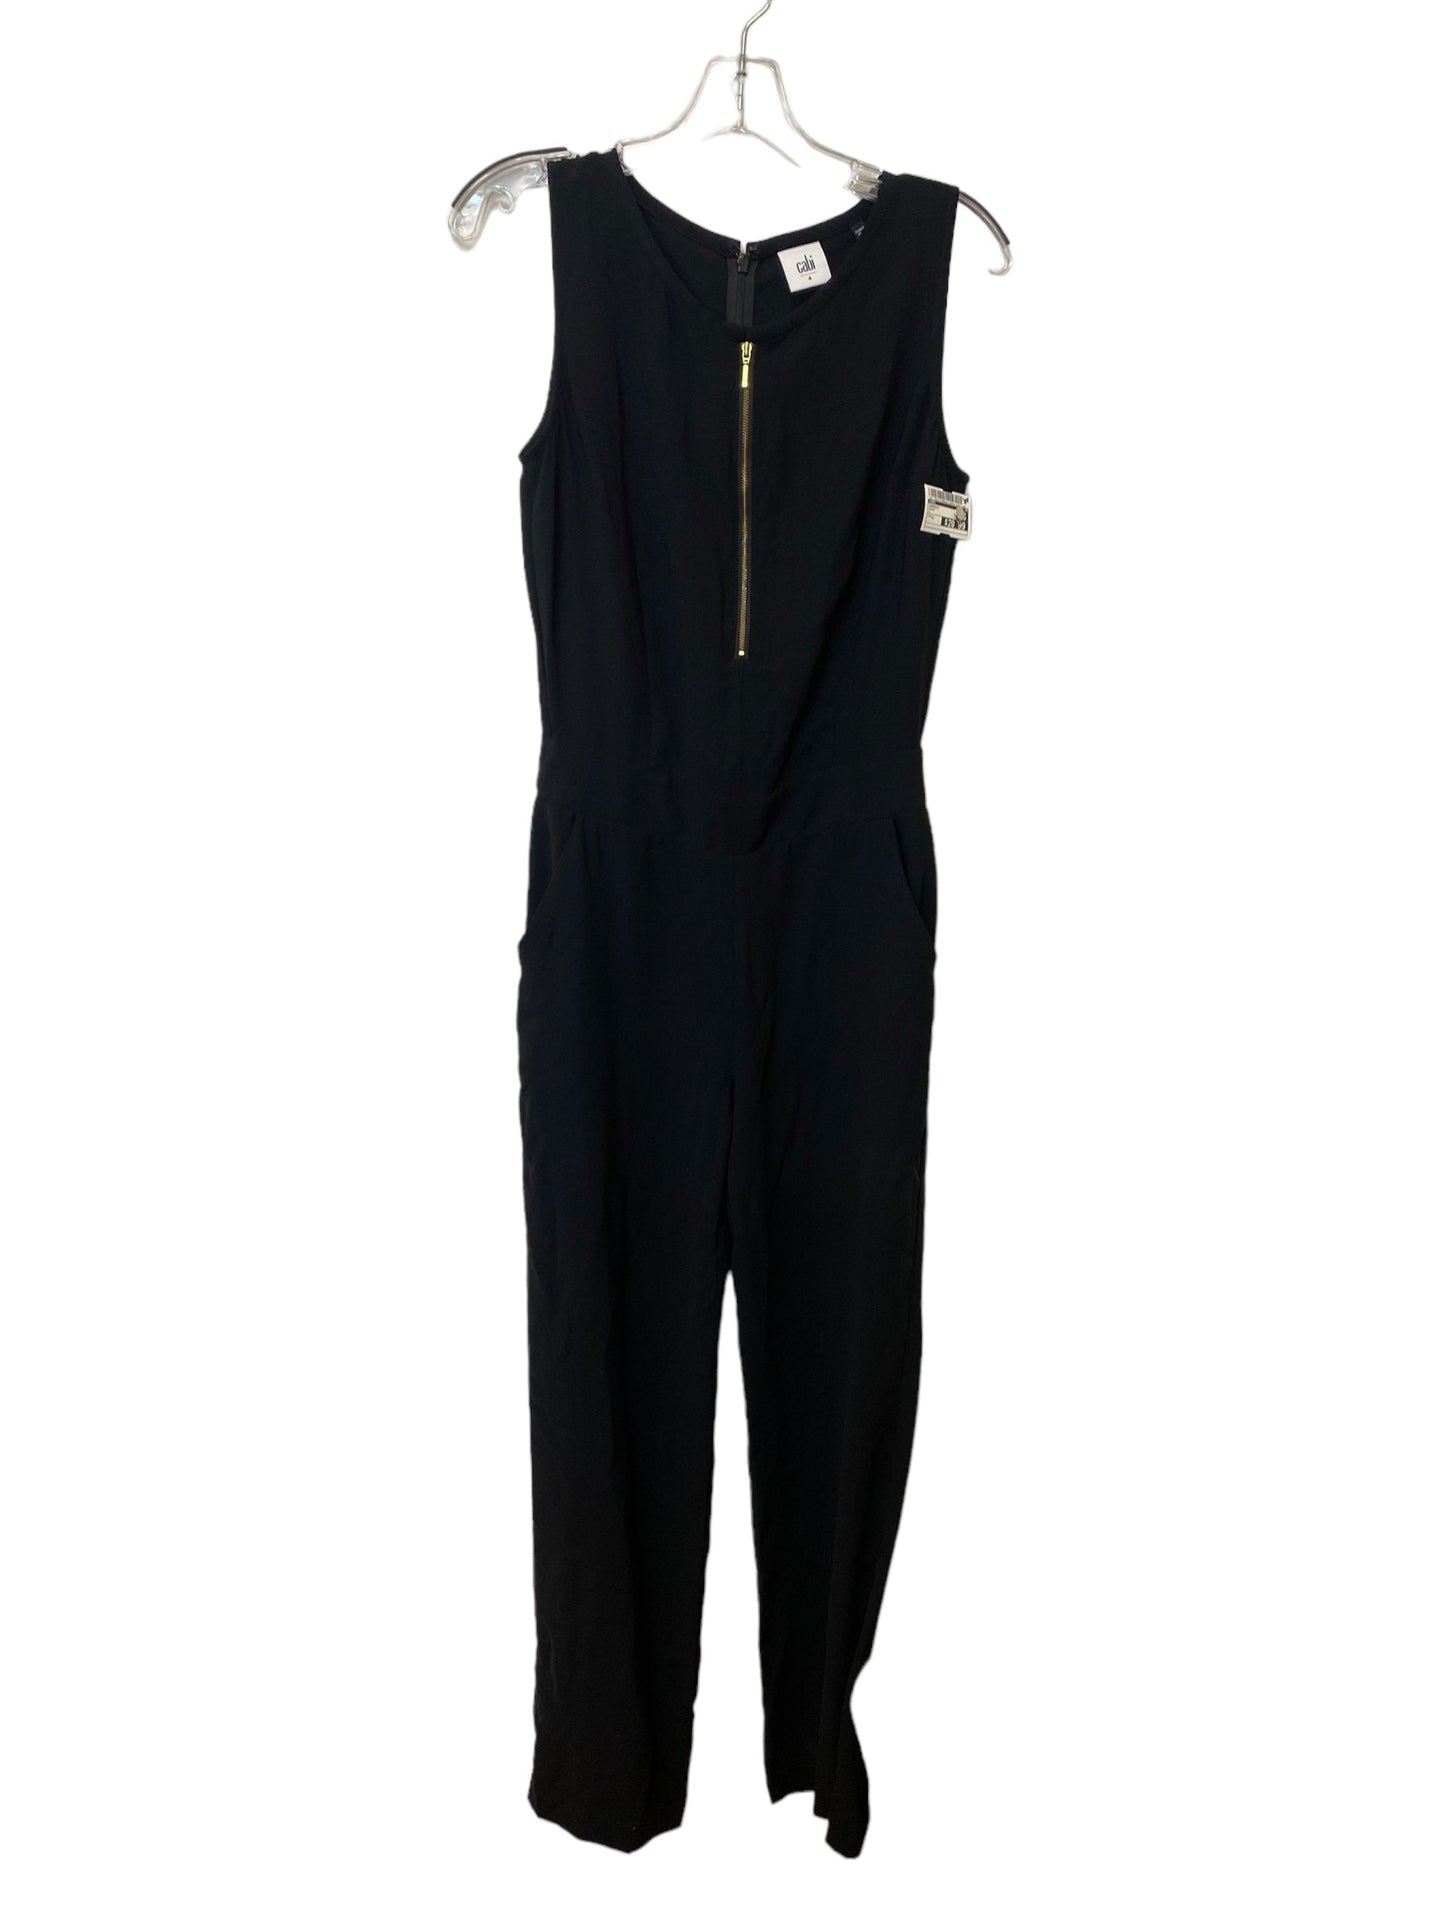 Black Jumpsuit Cabi, Size 4